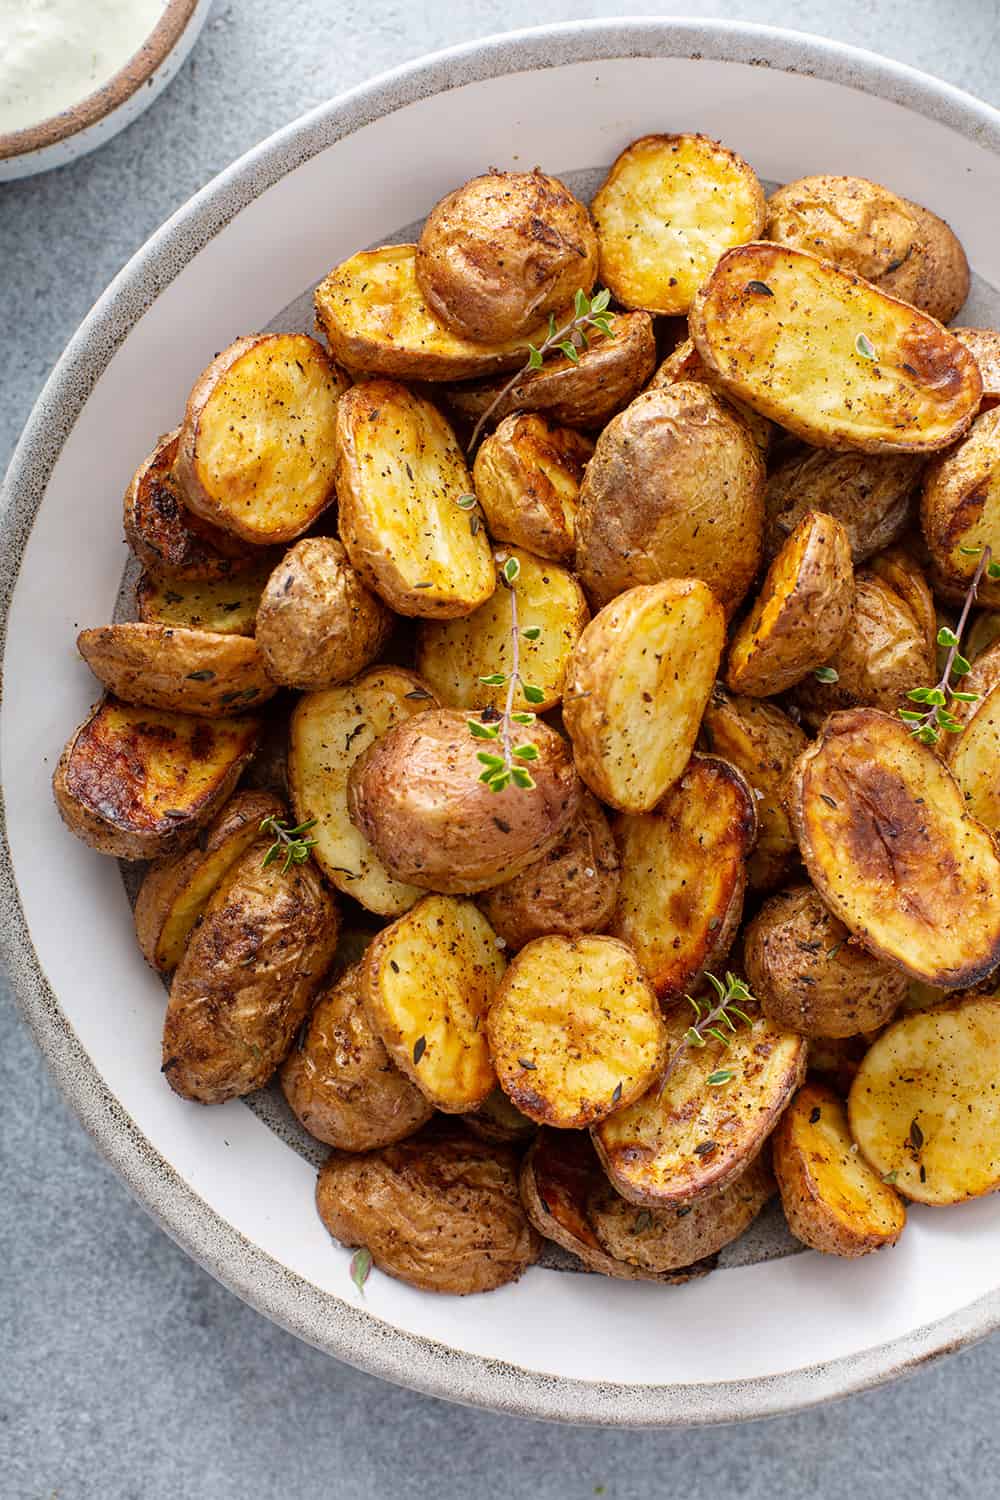 Fried Potatoes in AirFryer - Oil-Free Fryer 